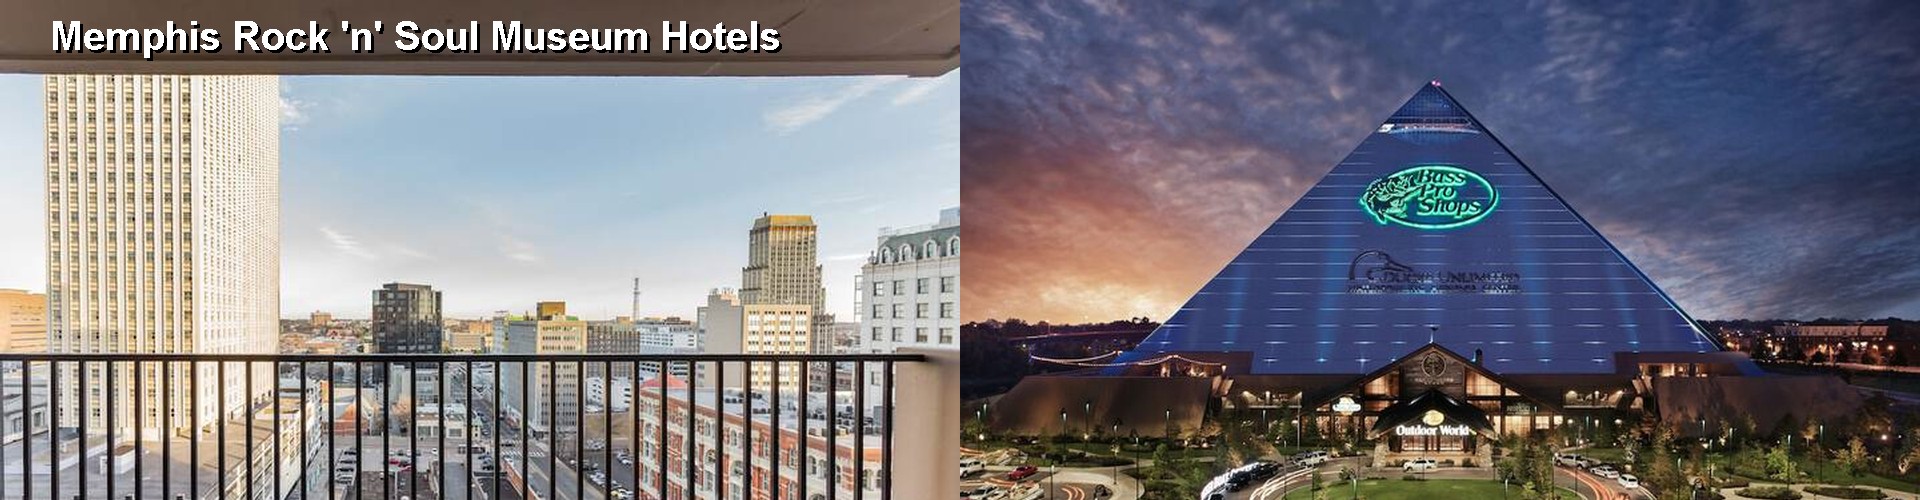 5 Best Hotels near Memphis Rock 'n' Soul Museum